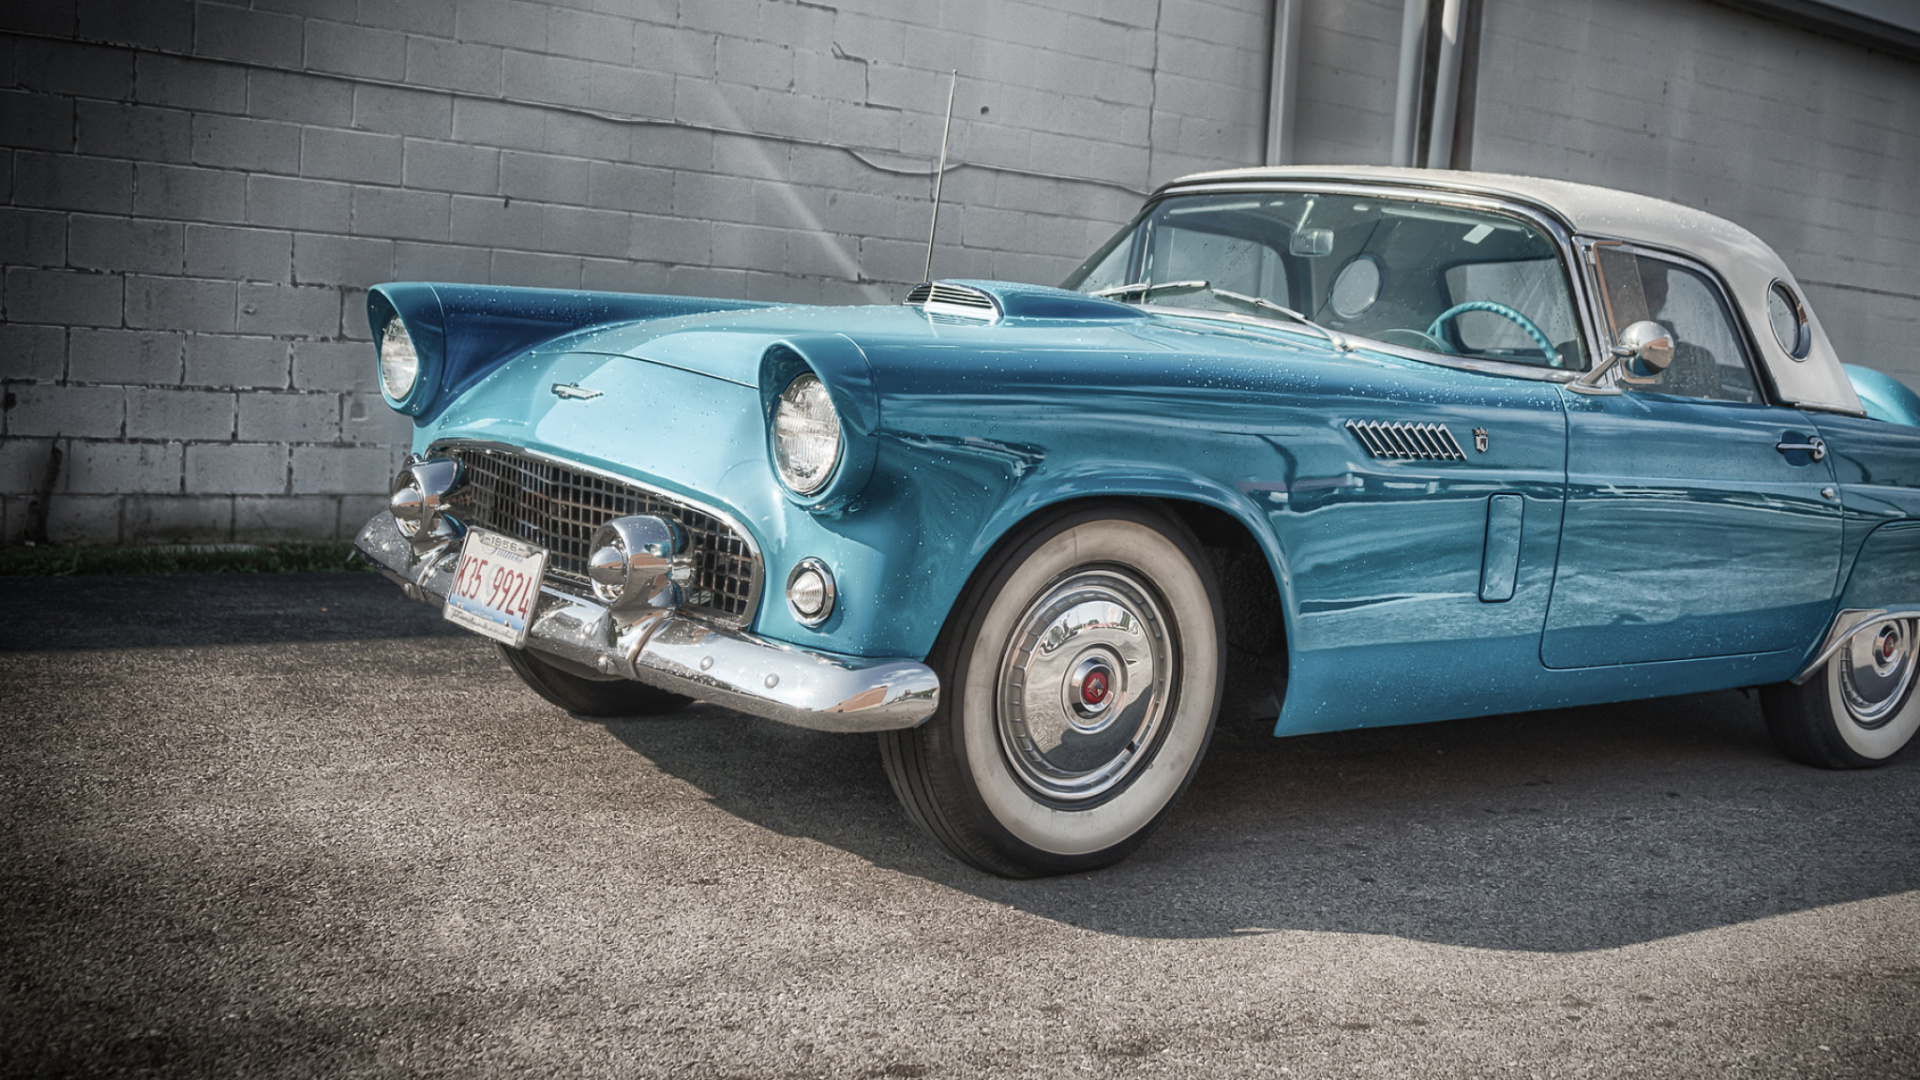 福特, 经典汽车, 经典的, 全尺寸的汽车, 古董车 壁纸 1920x1080 允许